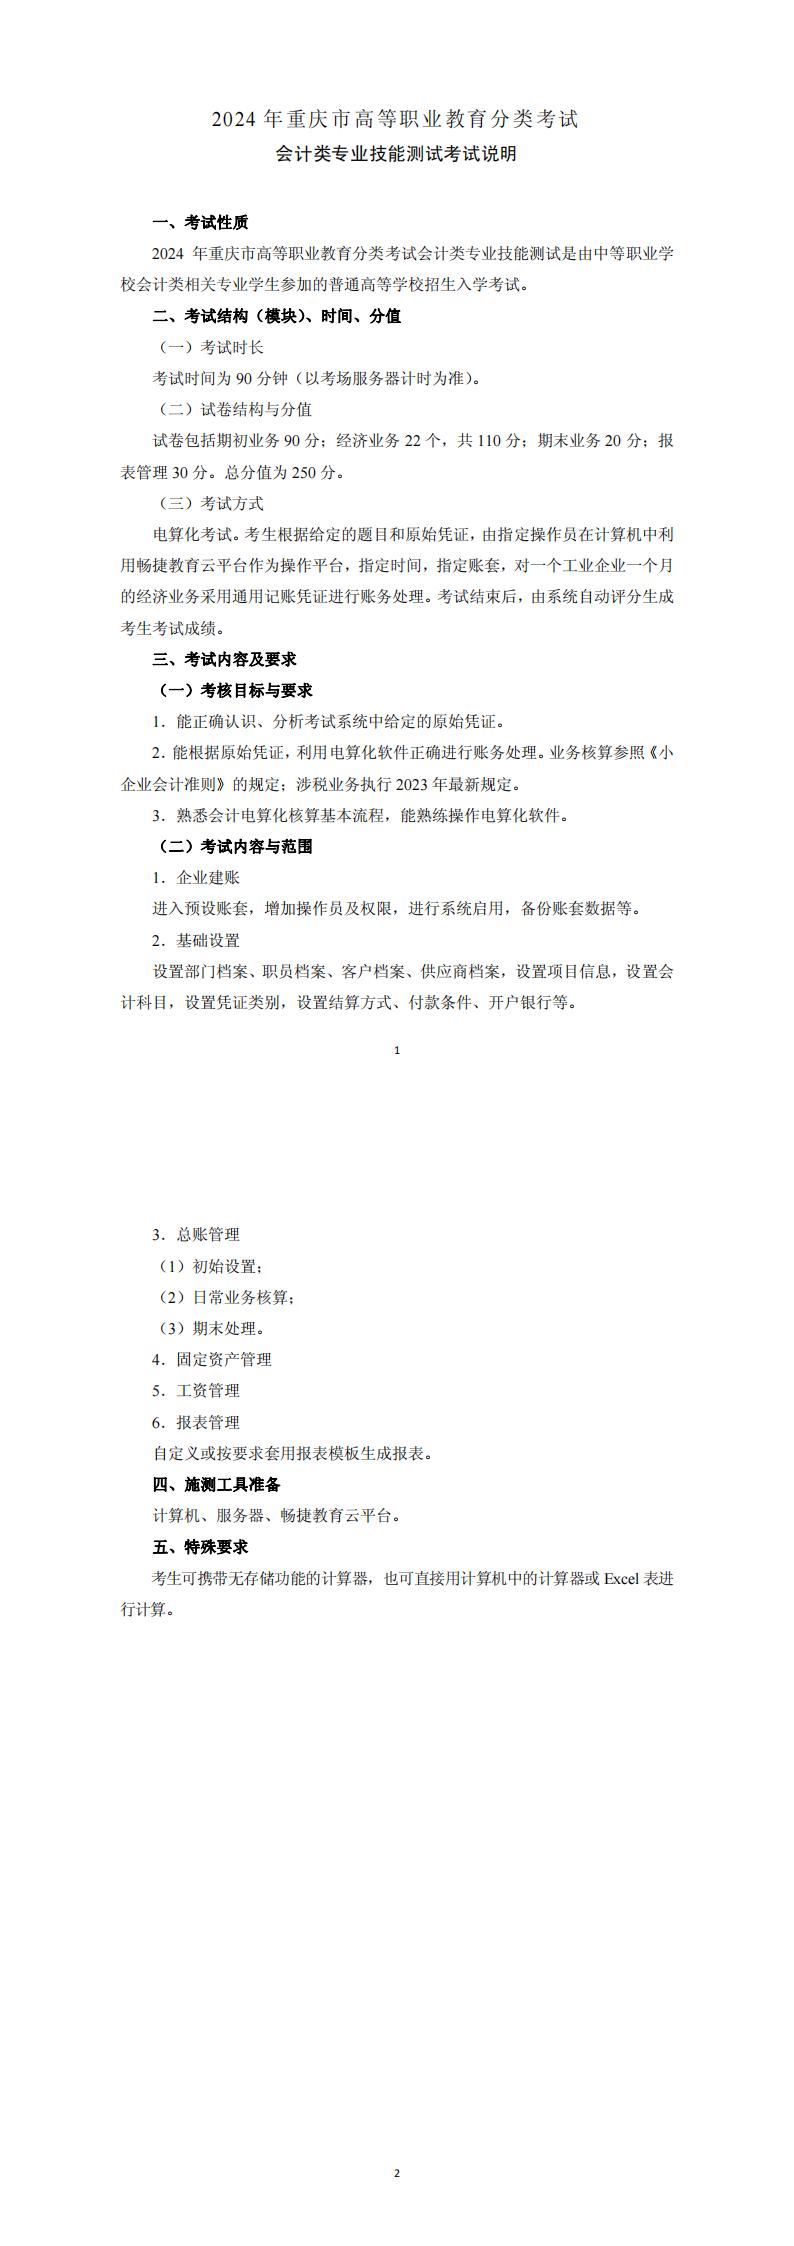 2024+年重庆市高等职业教育分类考试会计类专业技能测试考试说明_00.jpg